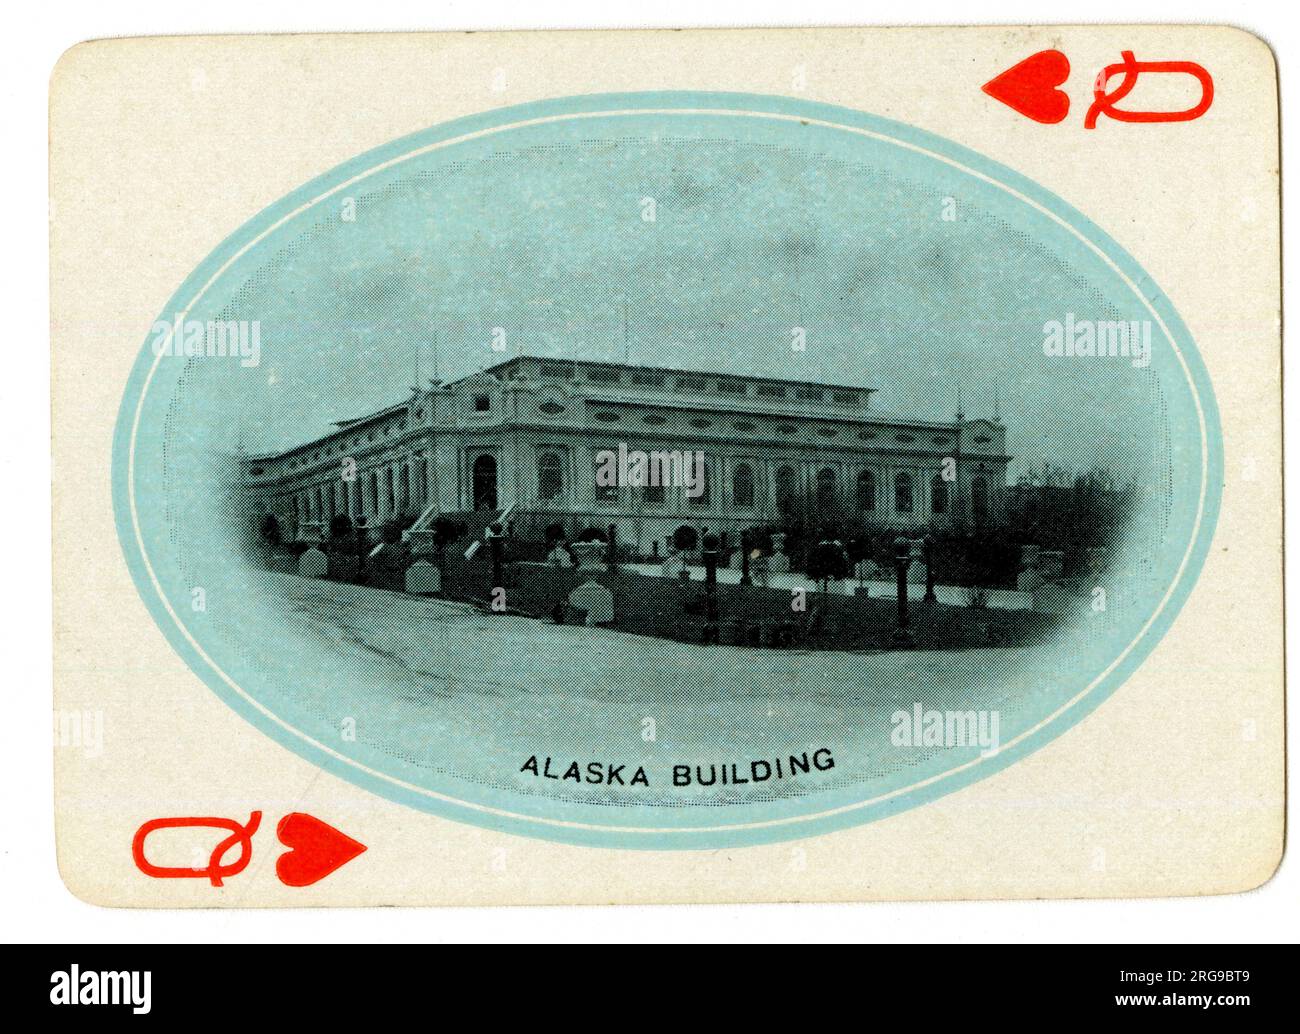 Alaska Building, Alaska Yukon Pacific Exposition, Seattle, USA. Stock Photo